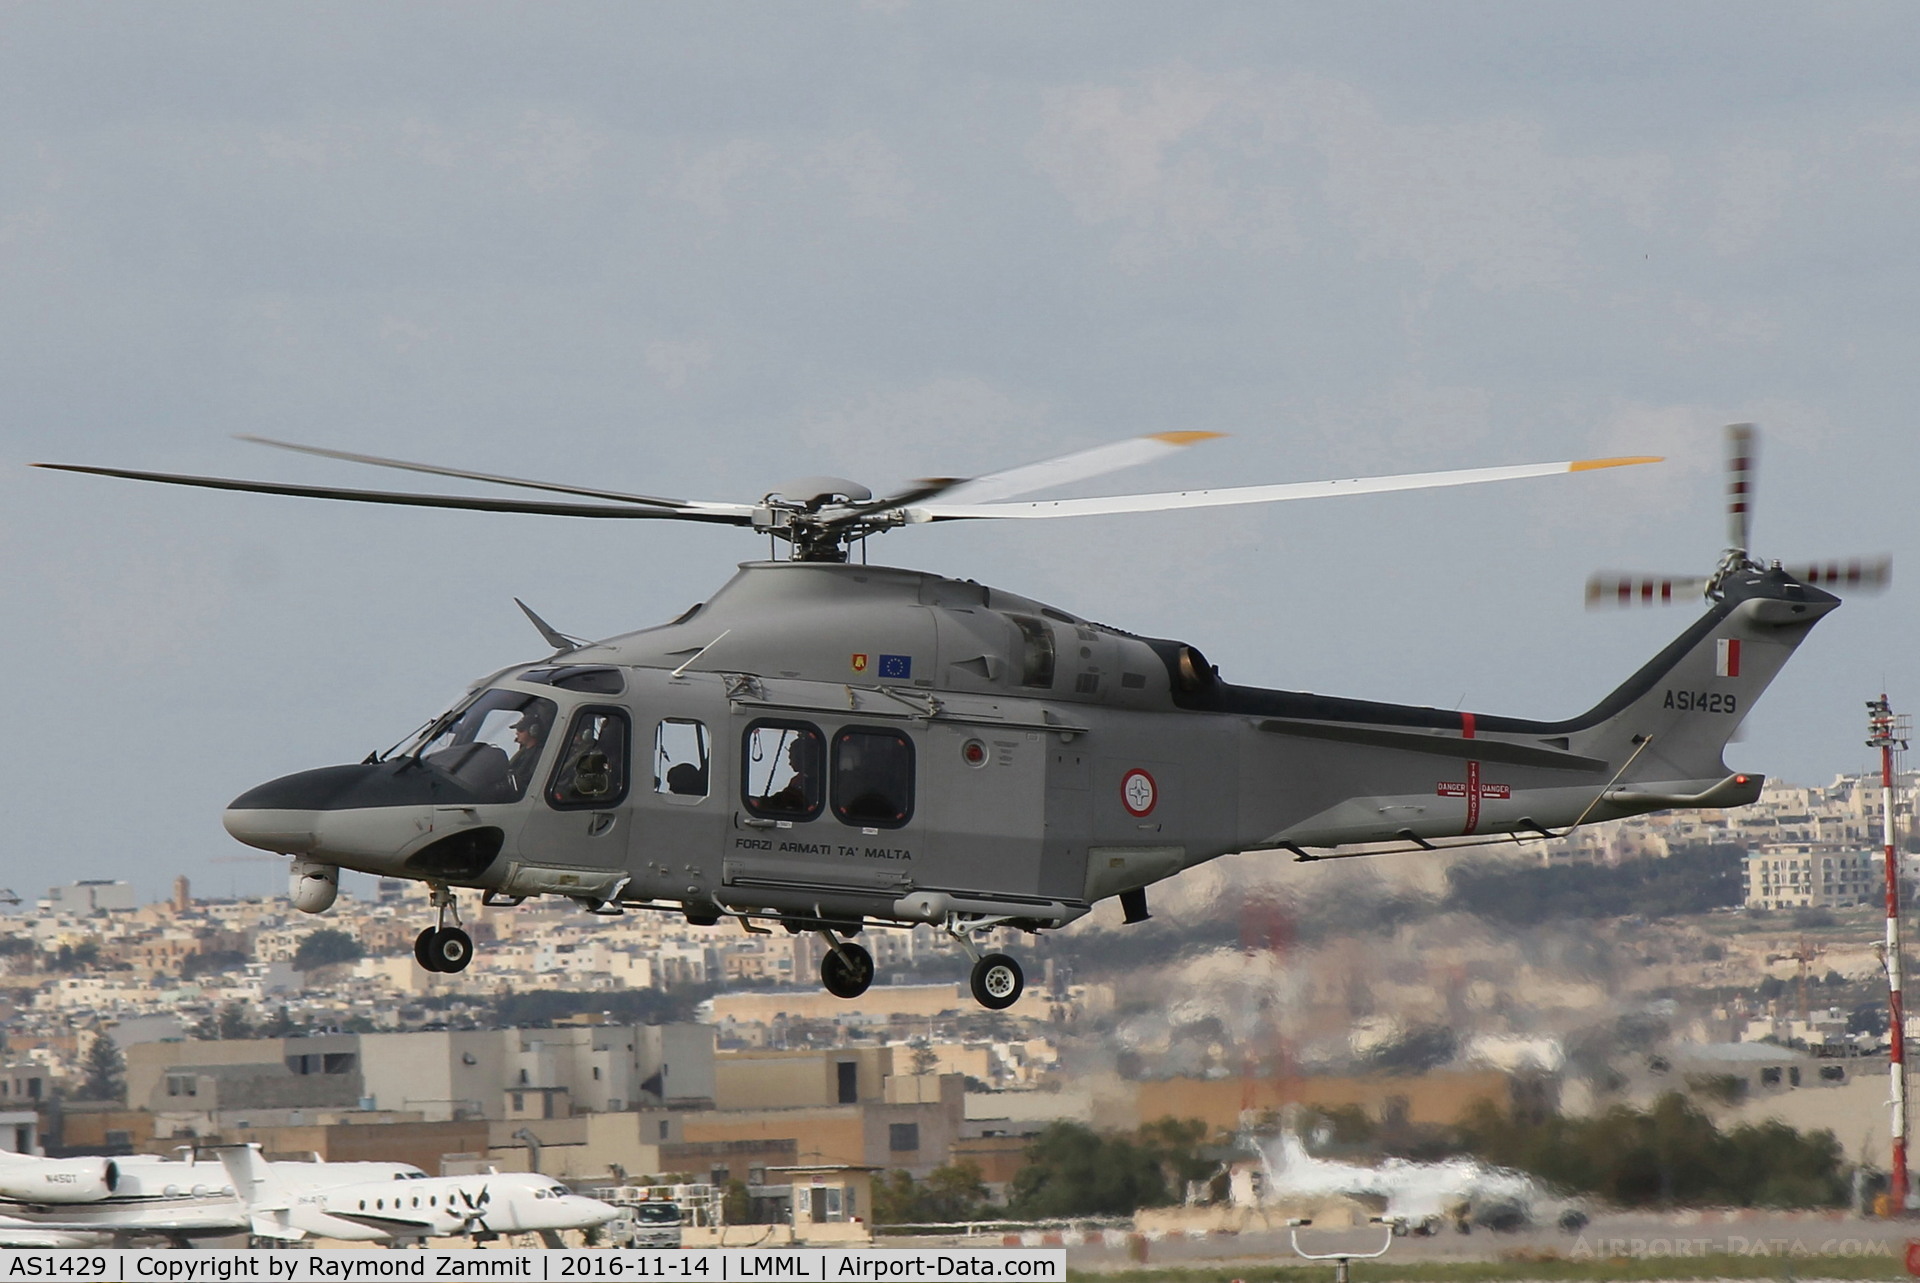 AS1429, AgustaWestland AW-139 C/N 31595, Agusta Westland AS1429 Armed Forces of Malta